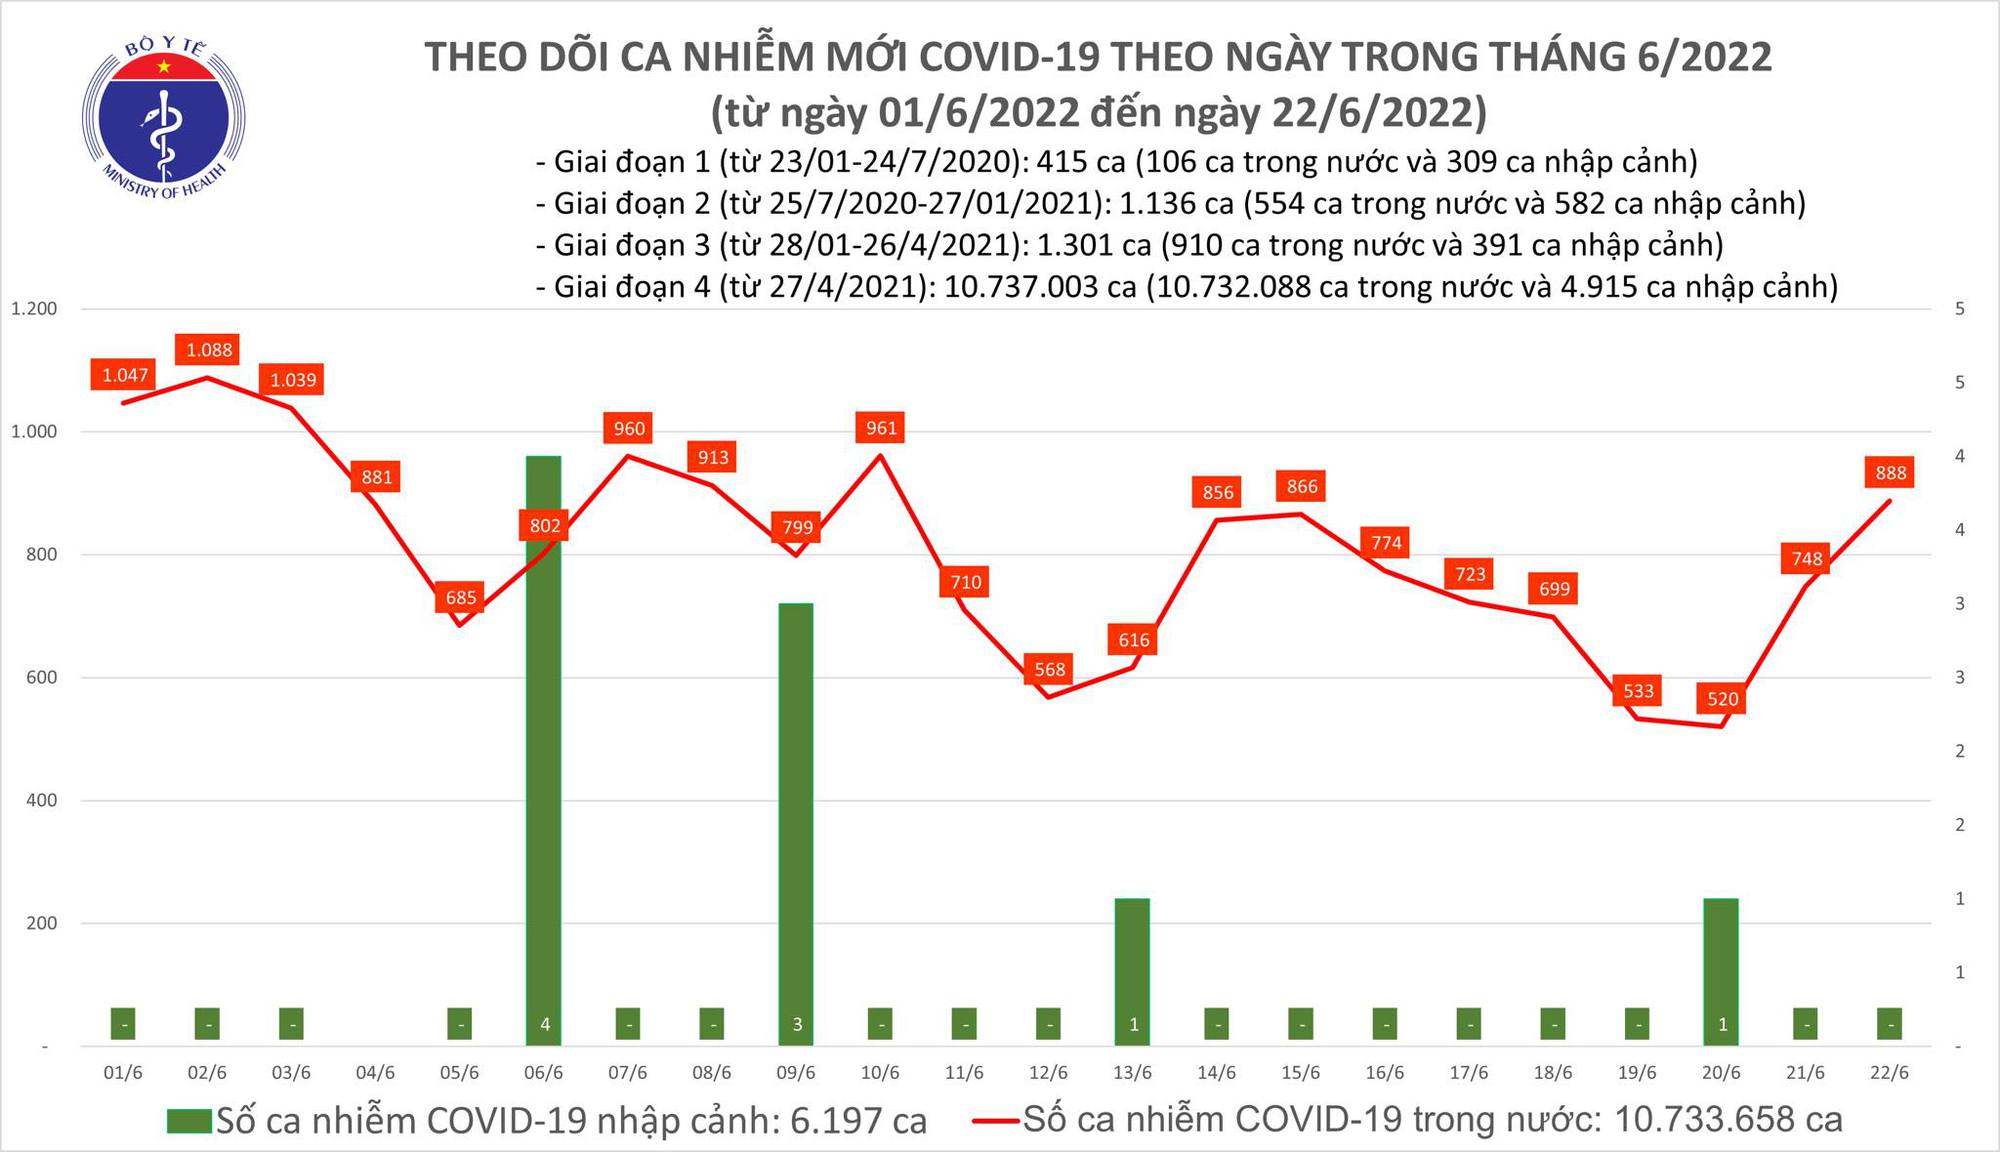 Ngày 22/6: Ca COVID-19 tiếp tục tăng, có 888 F0 tại 43 tỉnh, thành